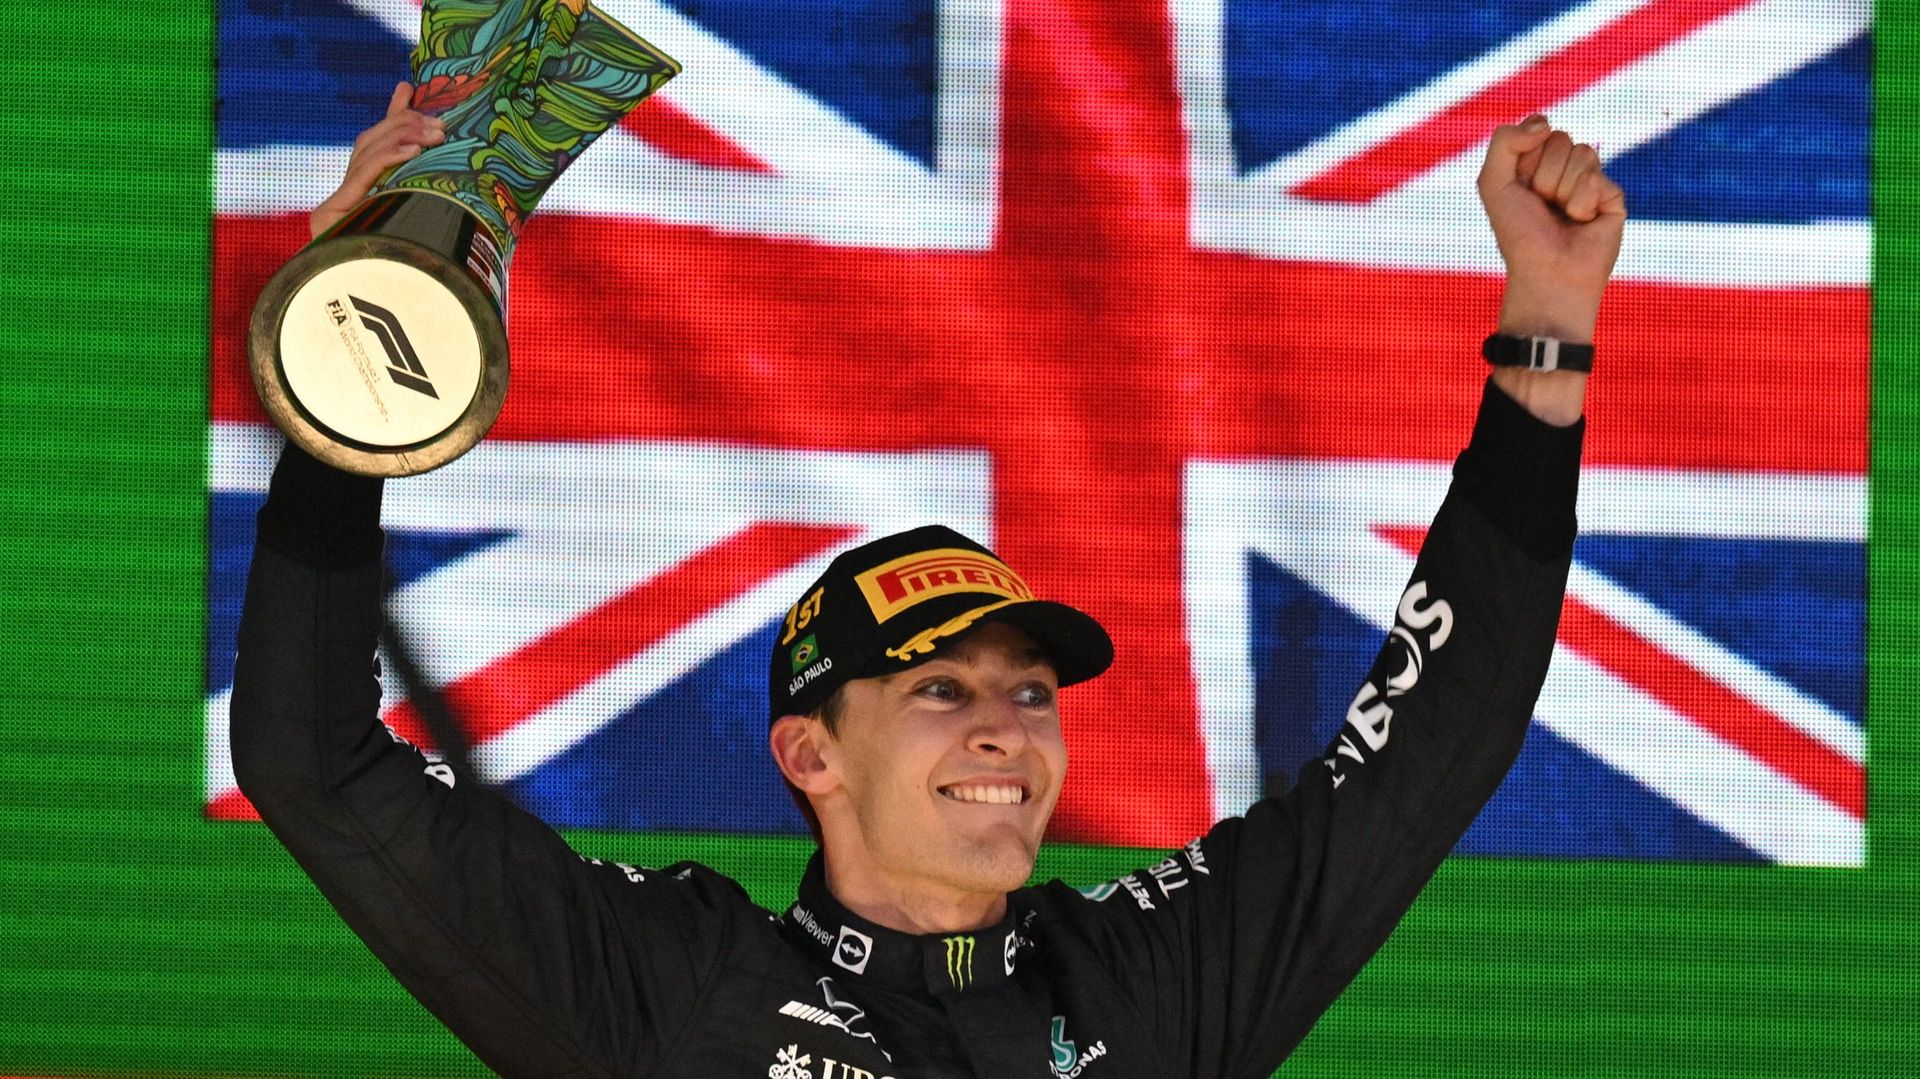 Russell est heureux après son premier succès en F1.